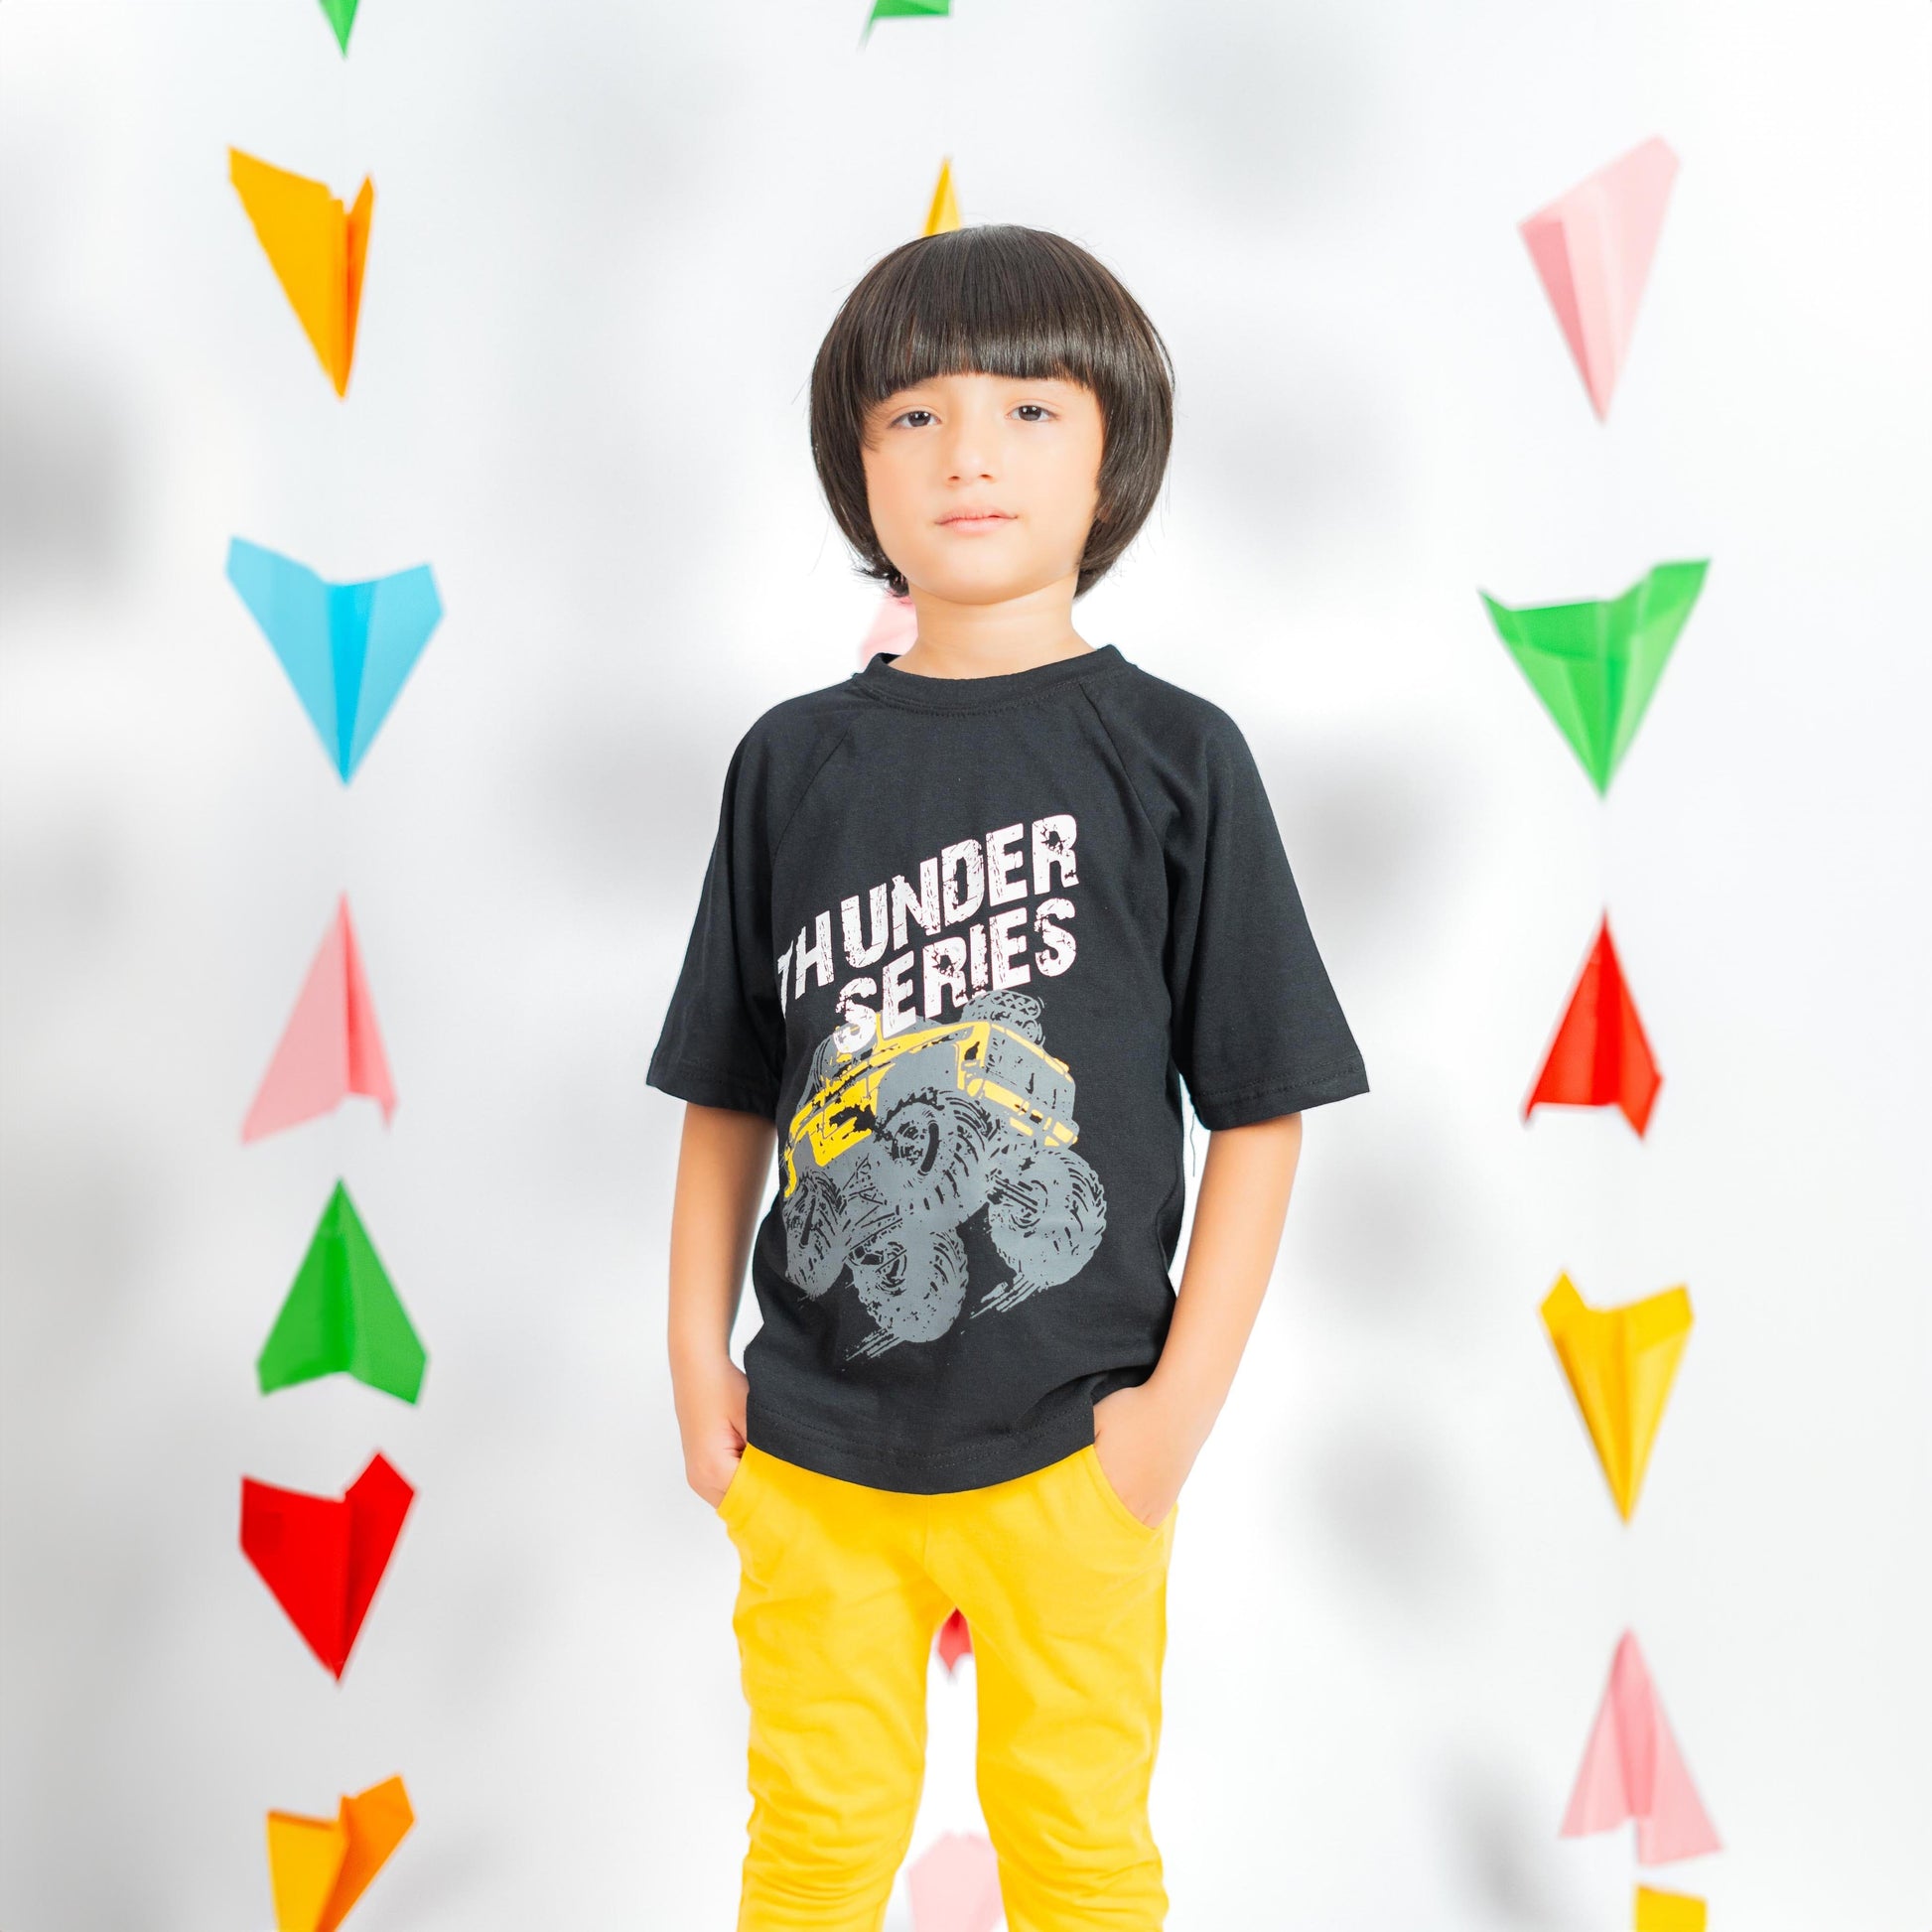 Minoti Kid's Thunder Series Printed Tee Shirt Boy's Tee Shirt SZK Black 3-4 Years 